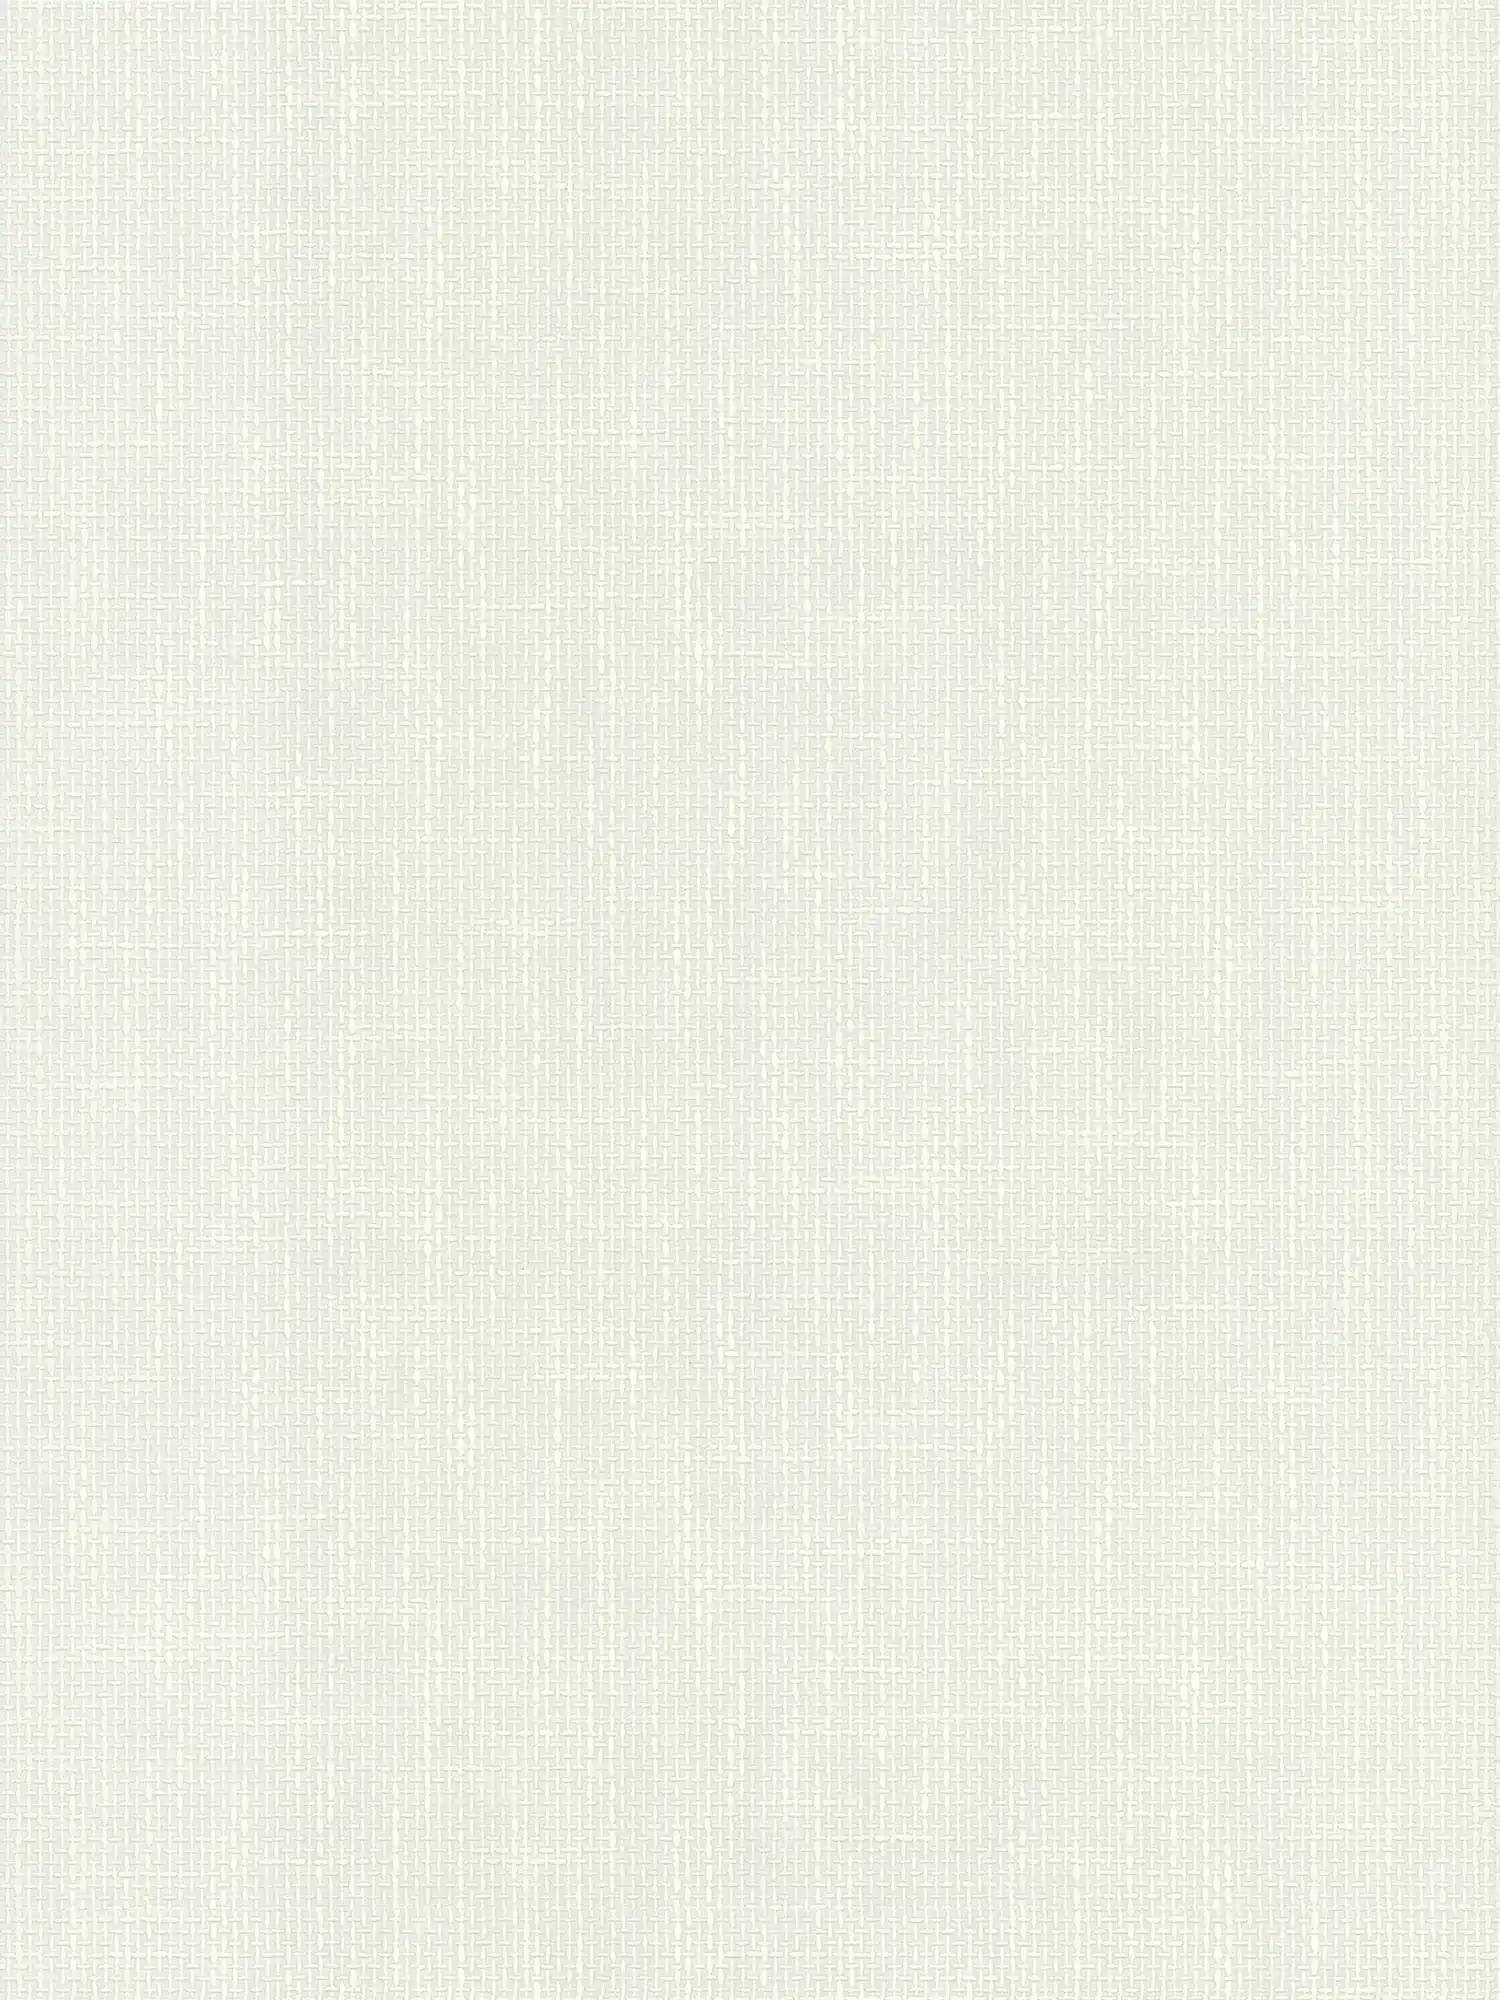 Papier peint profilé avec structure tissée imitation lin - Blanc
